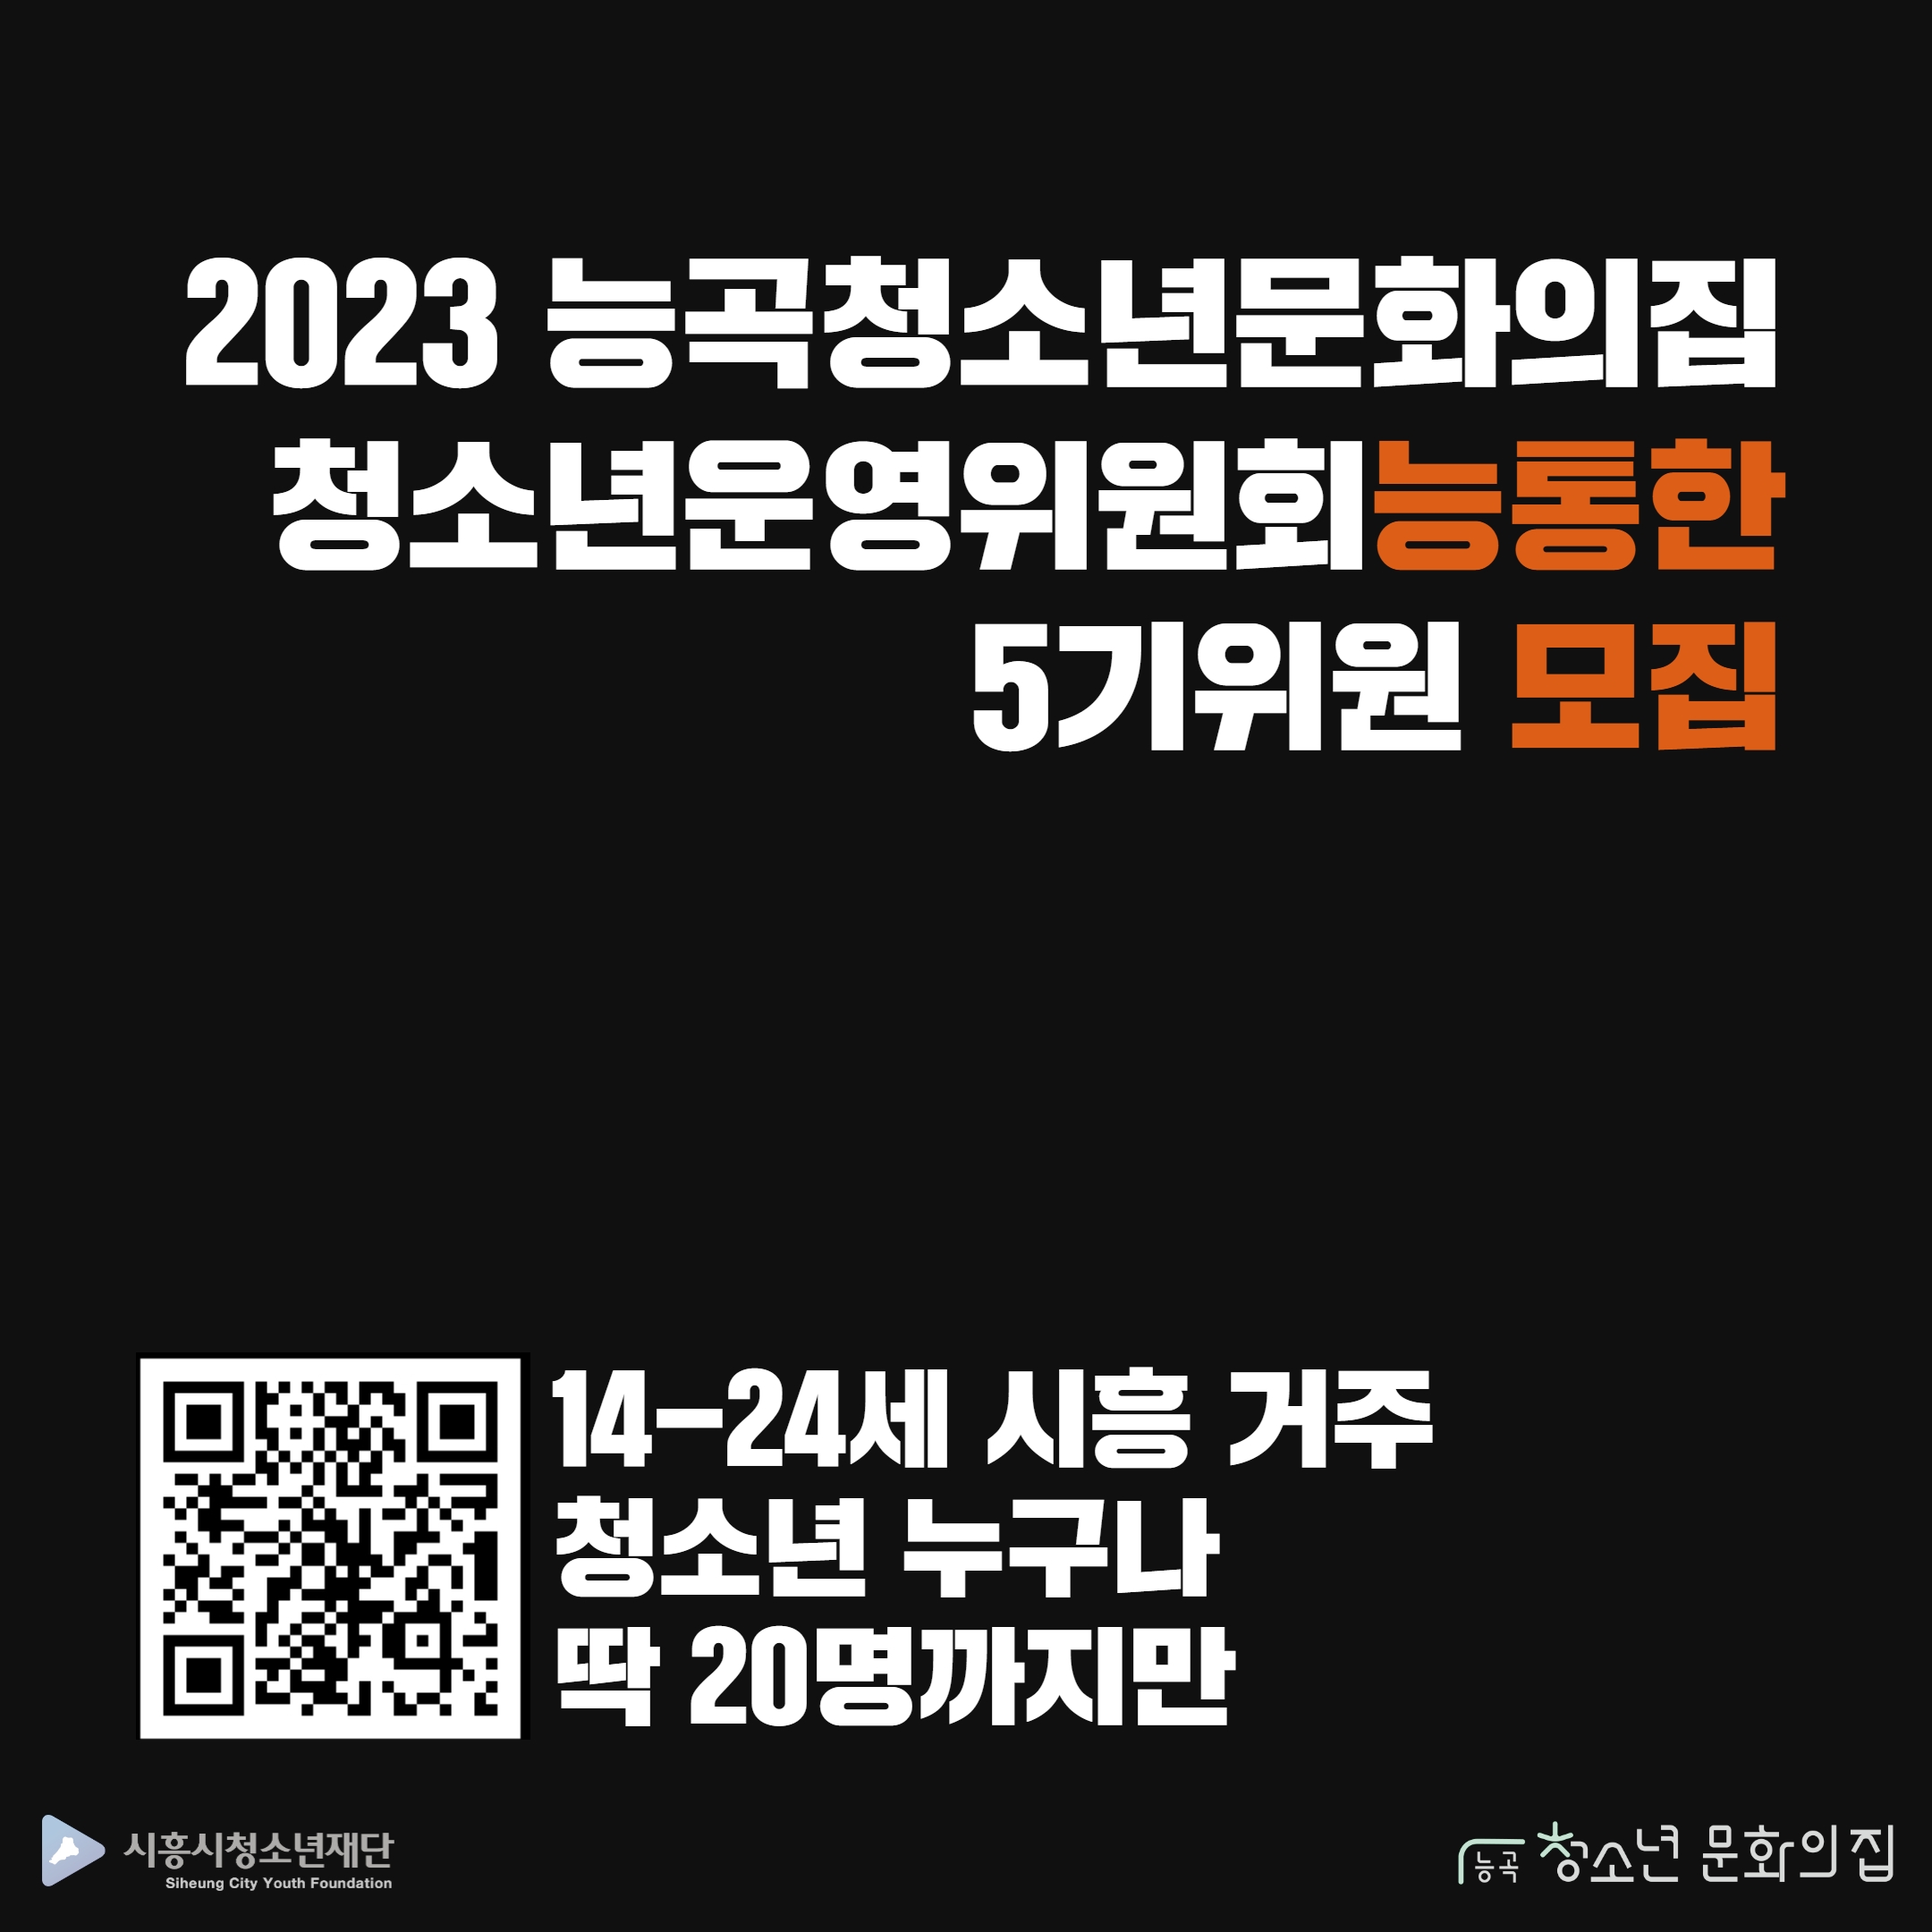 2023 능곡청소년문화의집 청소년운영위원회 '능통한' 5기 위원 모집